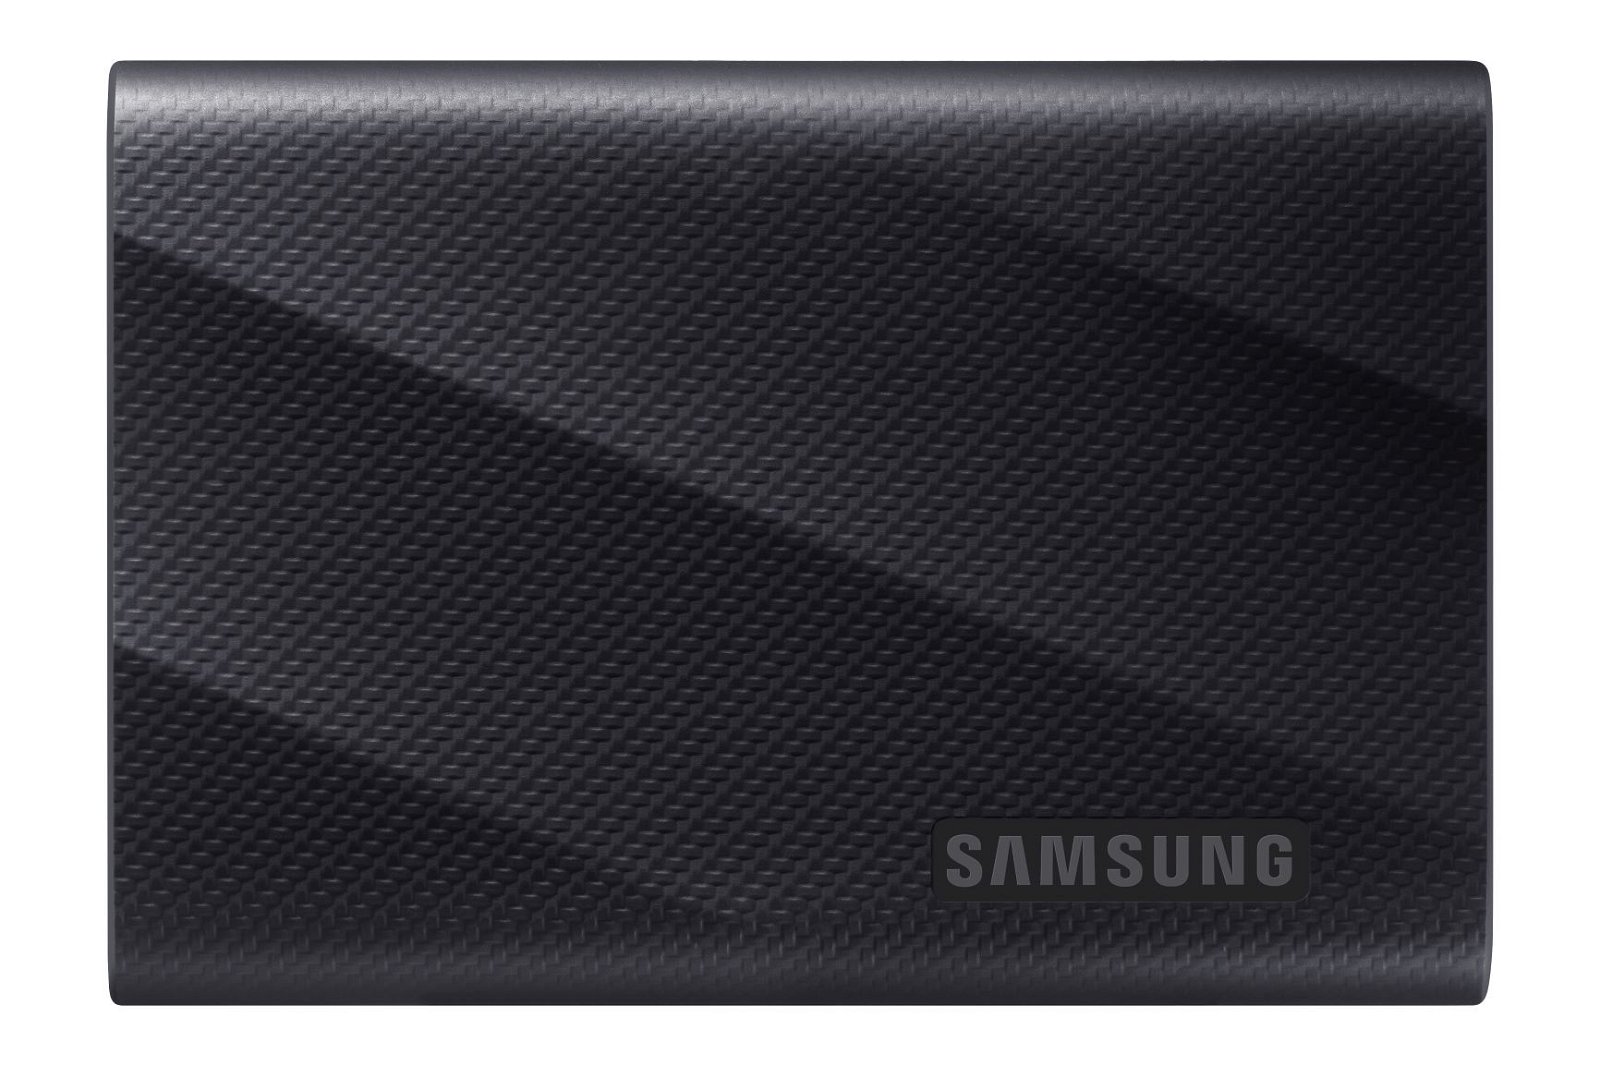 Immagine di Samsung annuncia il T9, un SSD portatile davvero eccezionale